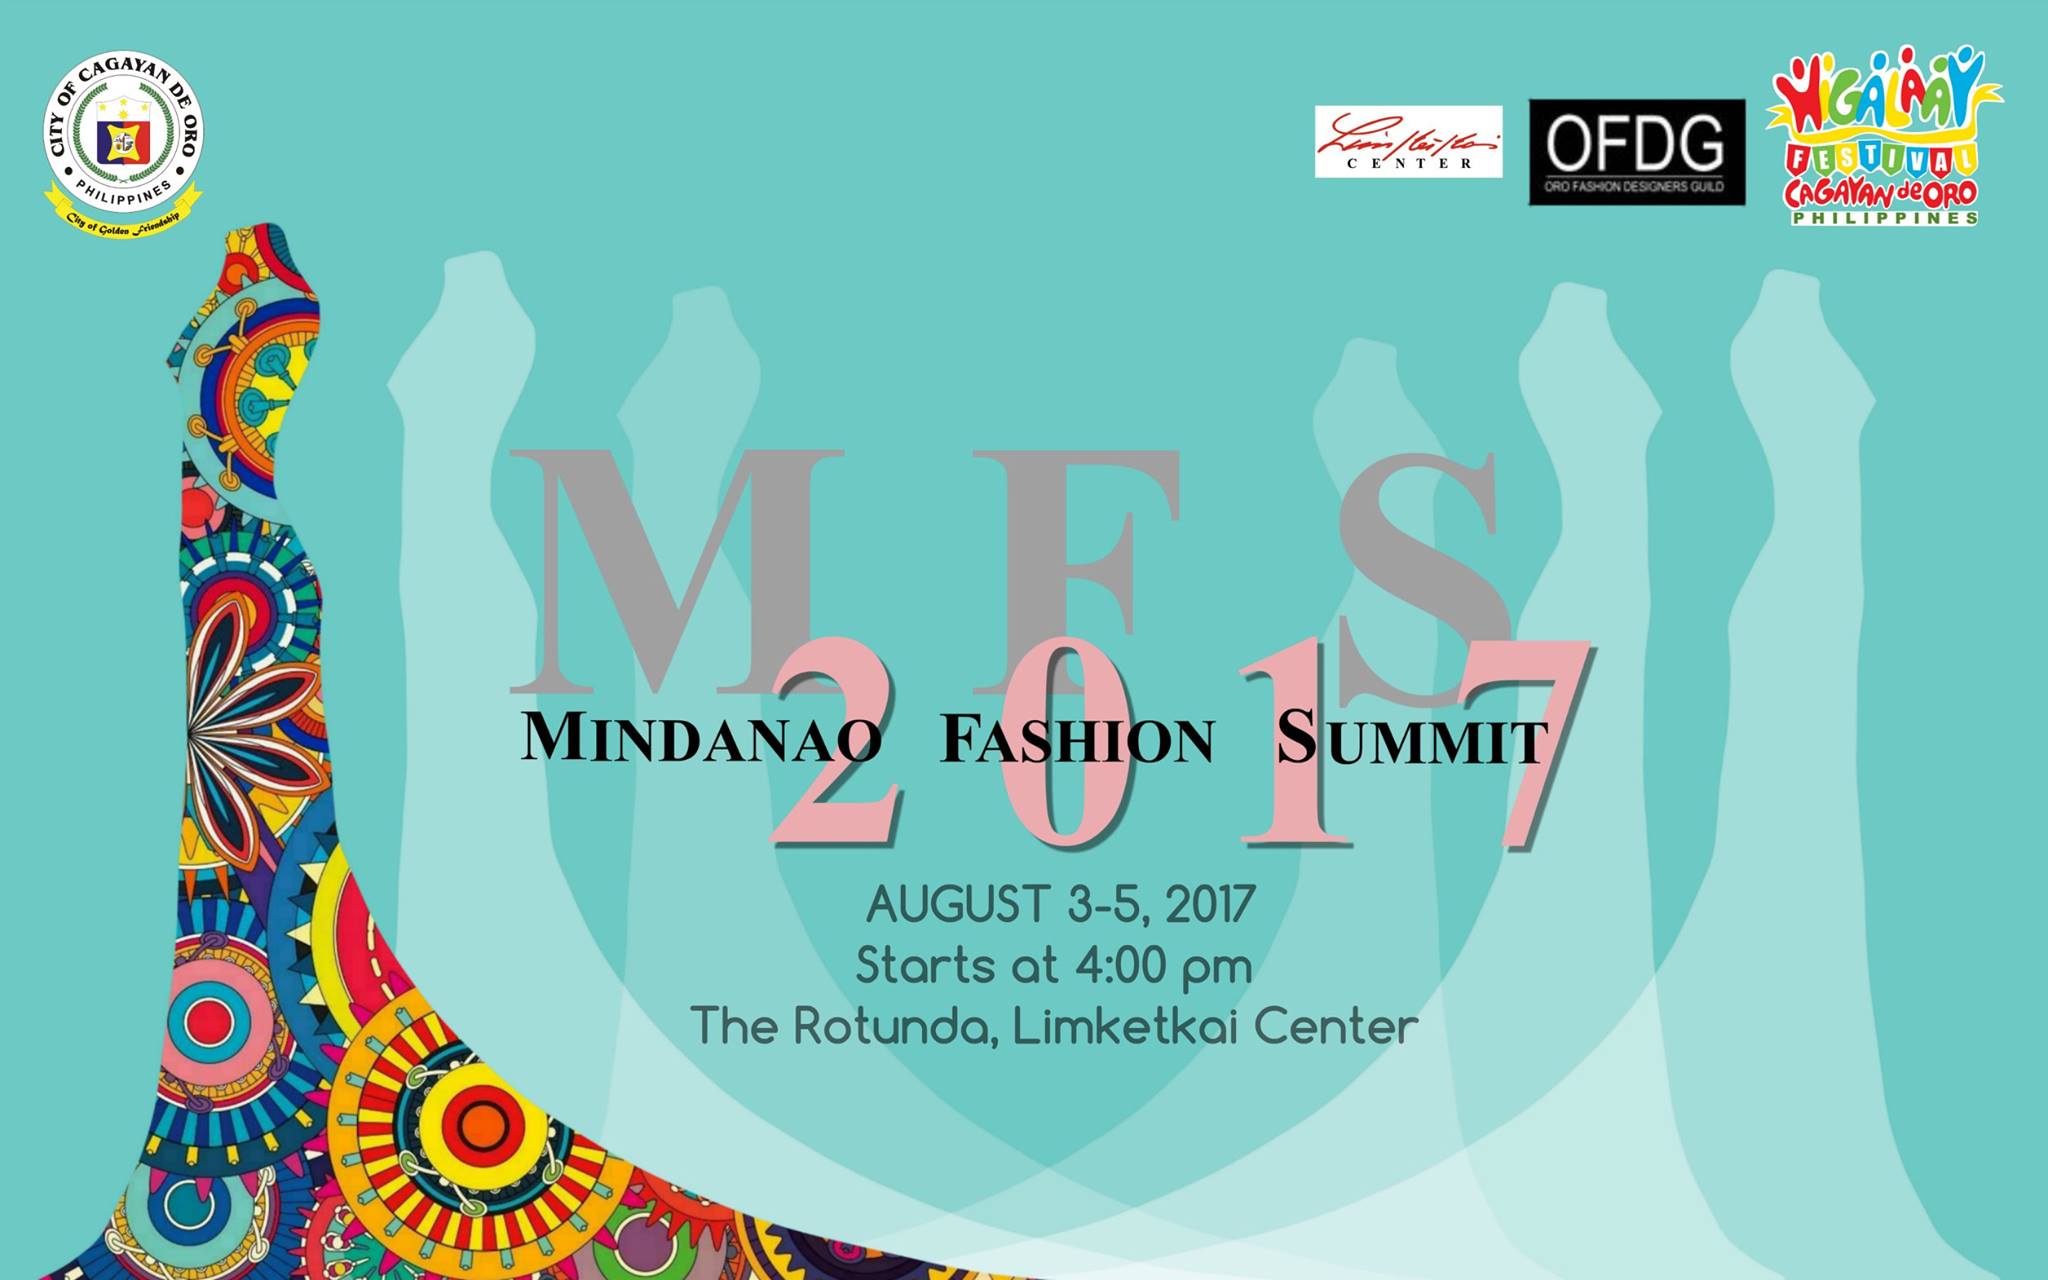 Mindanao Fashion Summit 2017, Mindanao Fashion Summit